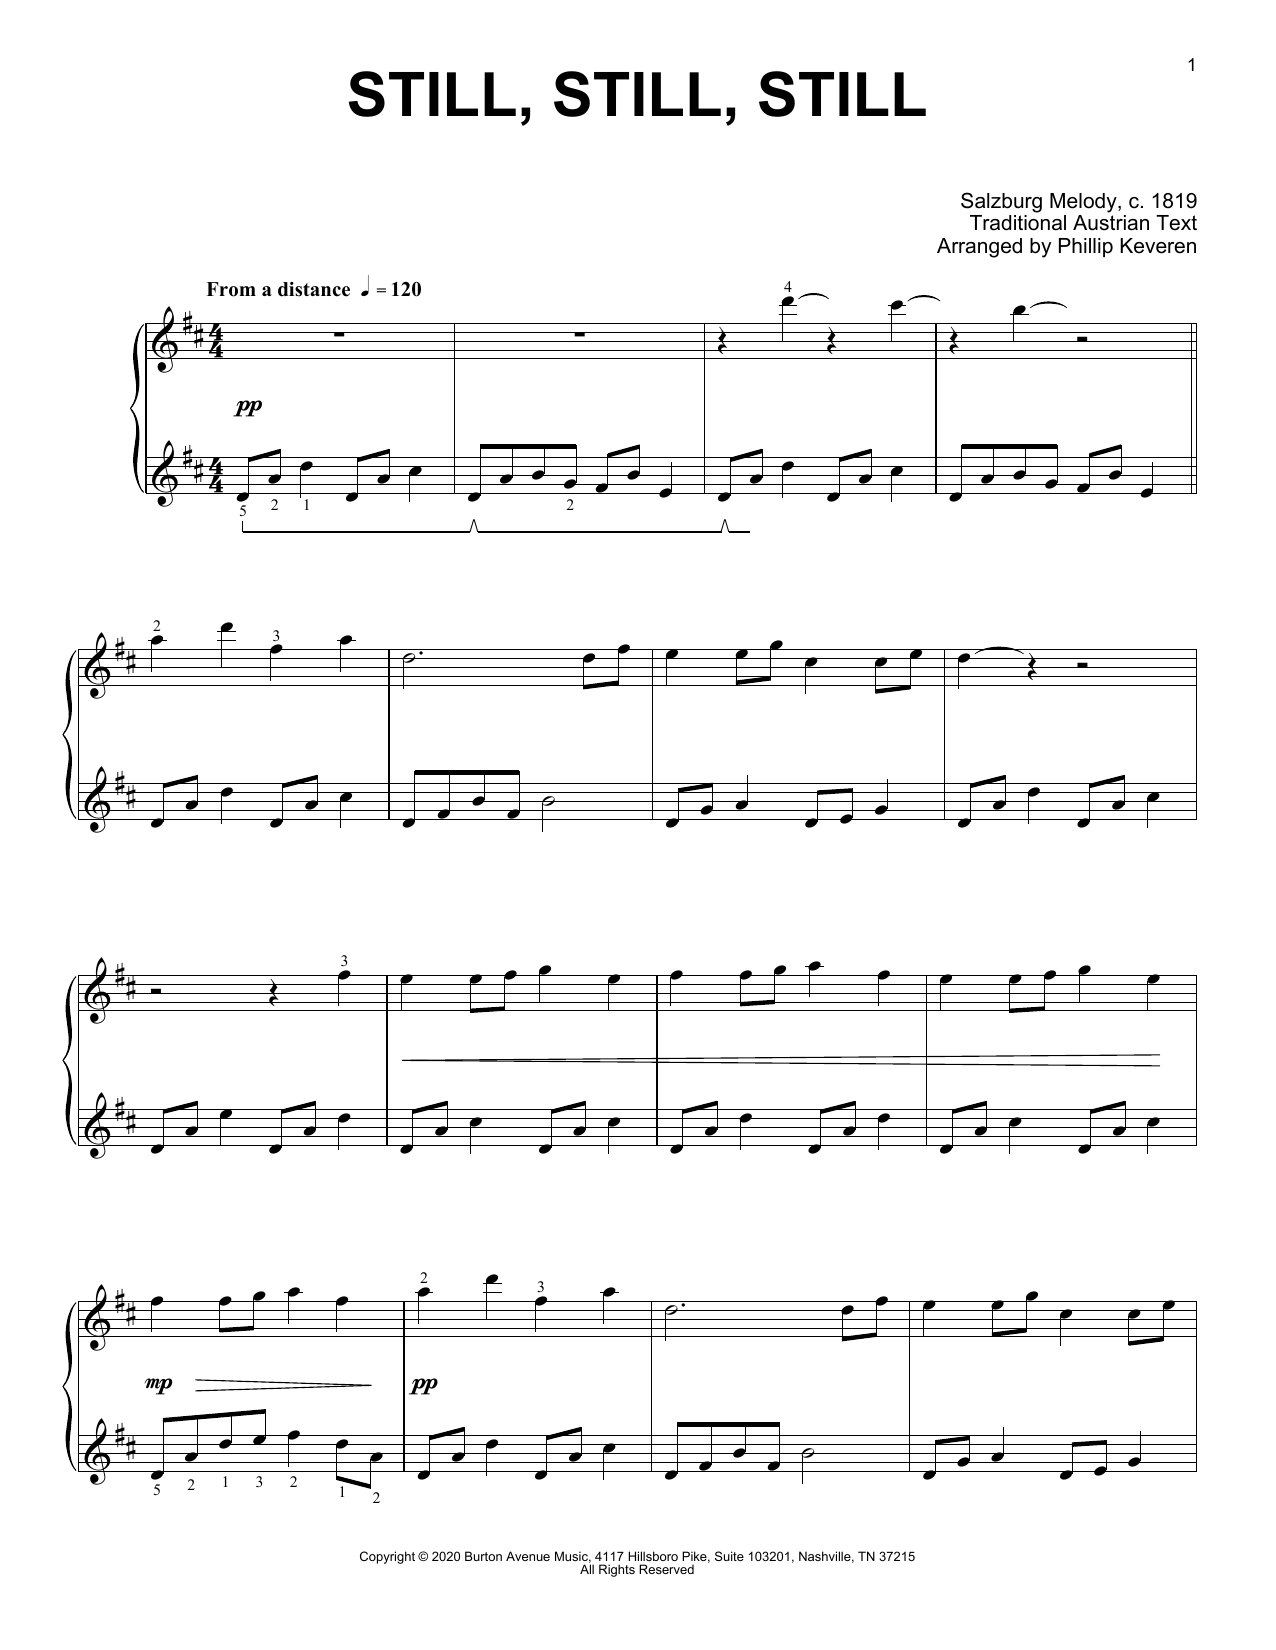 Traditional Carol Still, Still, Still (arr. Phillip Keveren) sheet music notes and chords arranged for Piano Solo